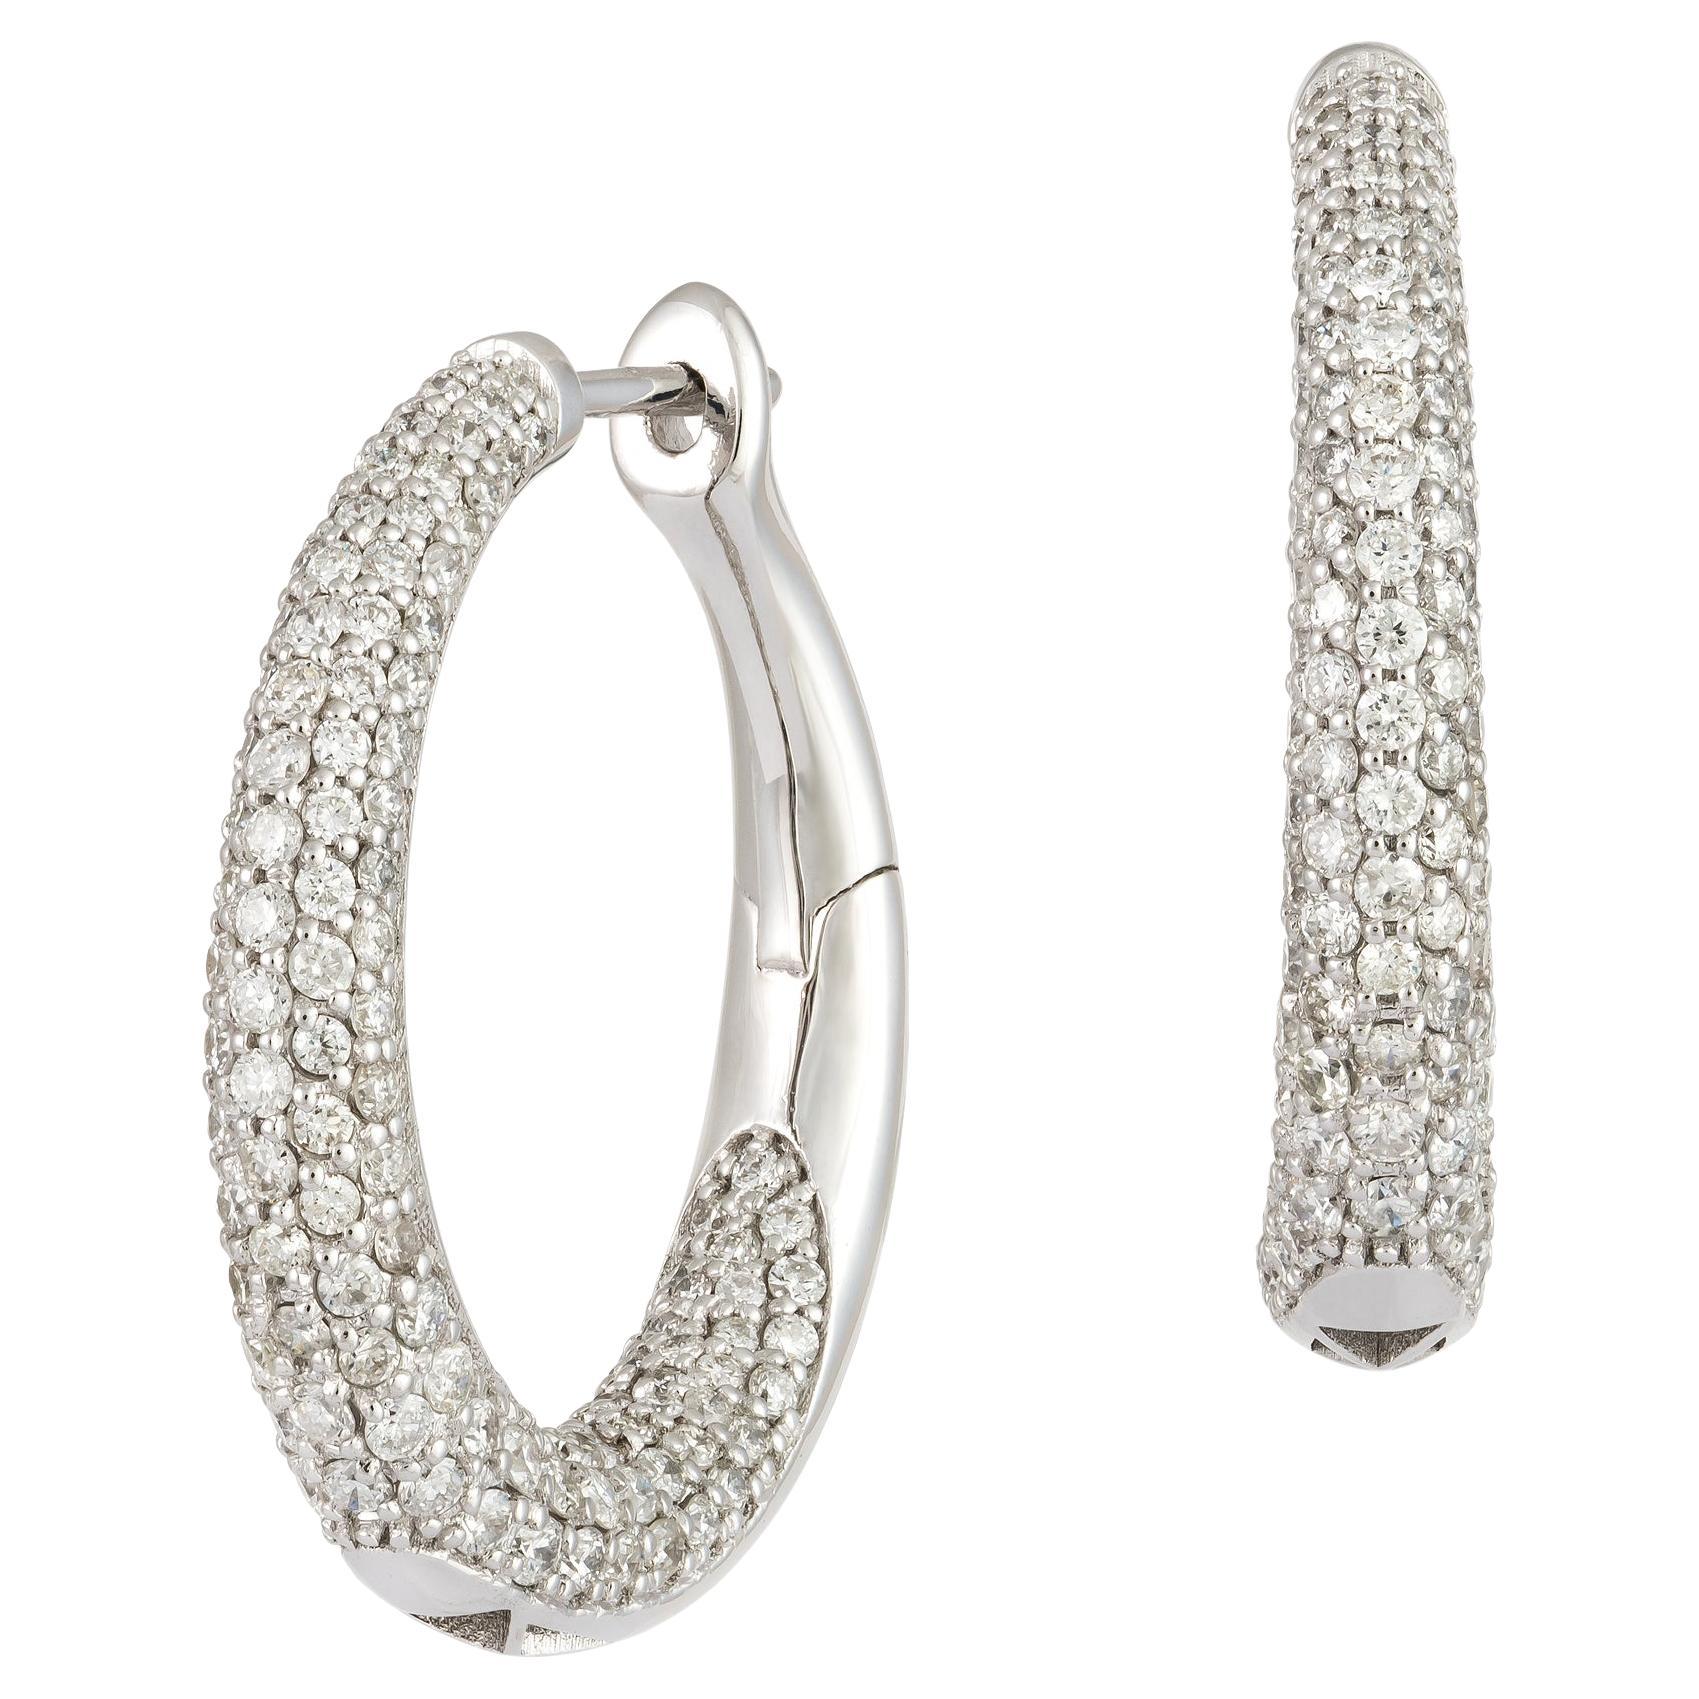 Stunning Hoop White Gold 18K Earrings Diamond for Her For Sale